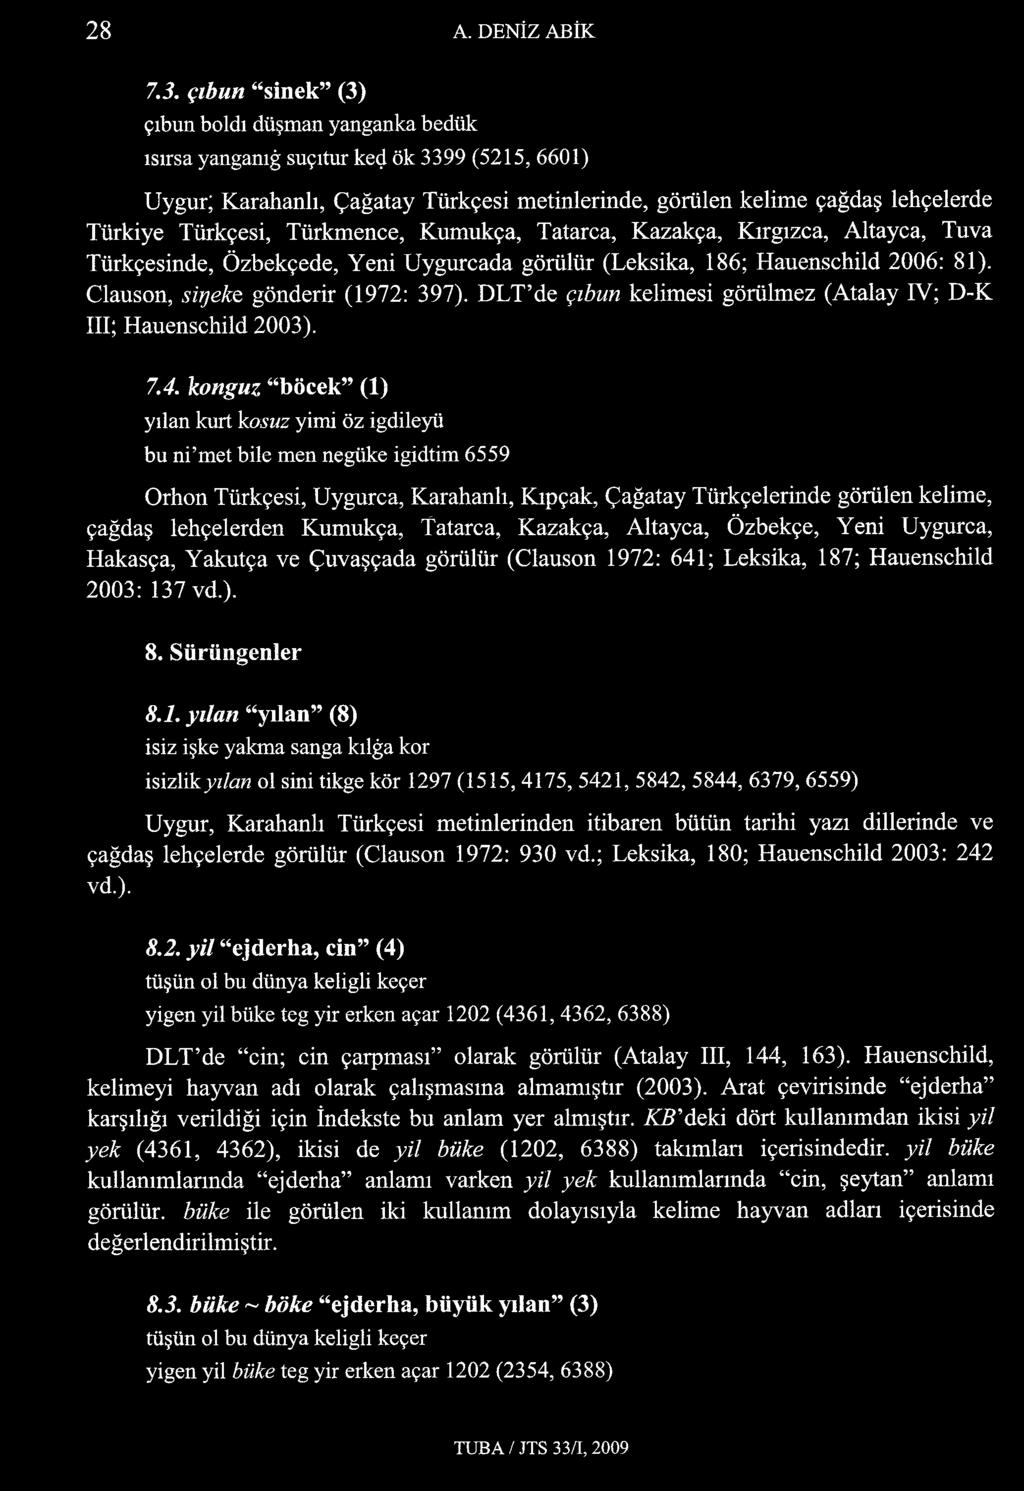 Türkmence, Kumukça, Tatarca, Kazakça, Kırgızca, Altayca, Tuva Türkçesinde, Özbekçede, Yeni Uygurcada görülür (Leksika, 186; Hauenschild 2006: 81). Clauson, siıjeke gönderir (1972: 397).